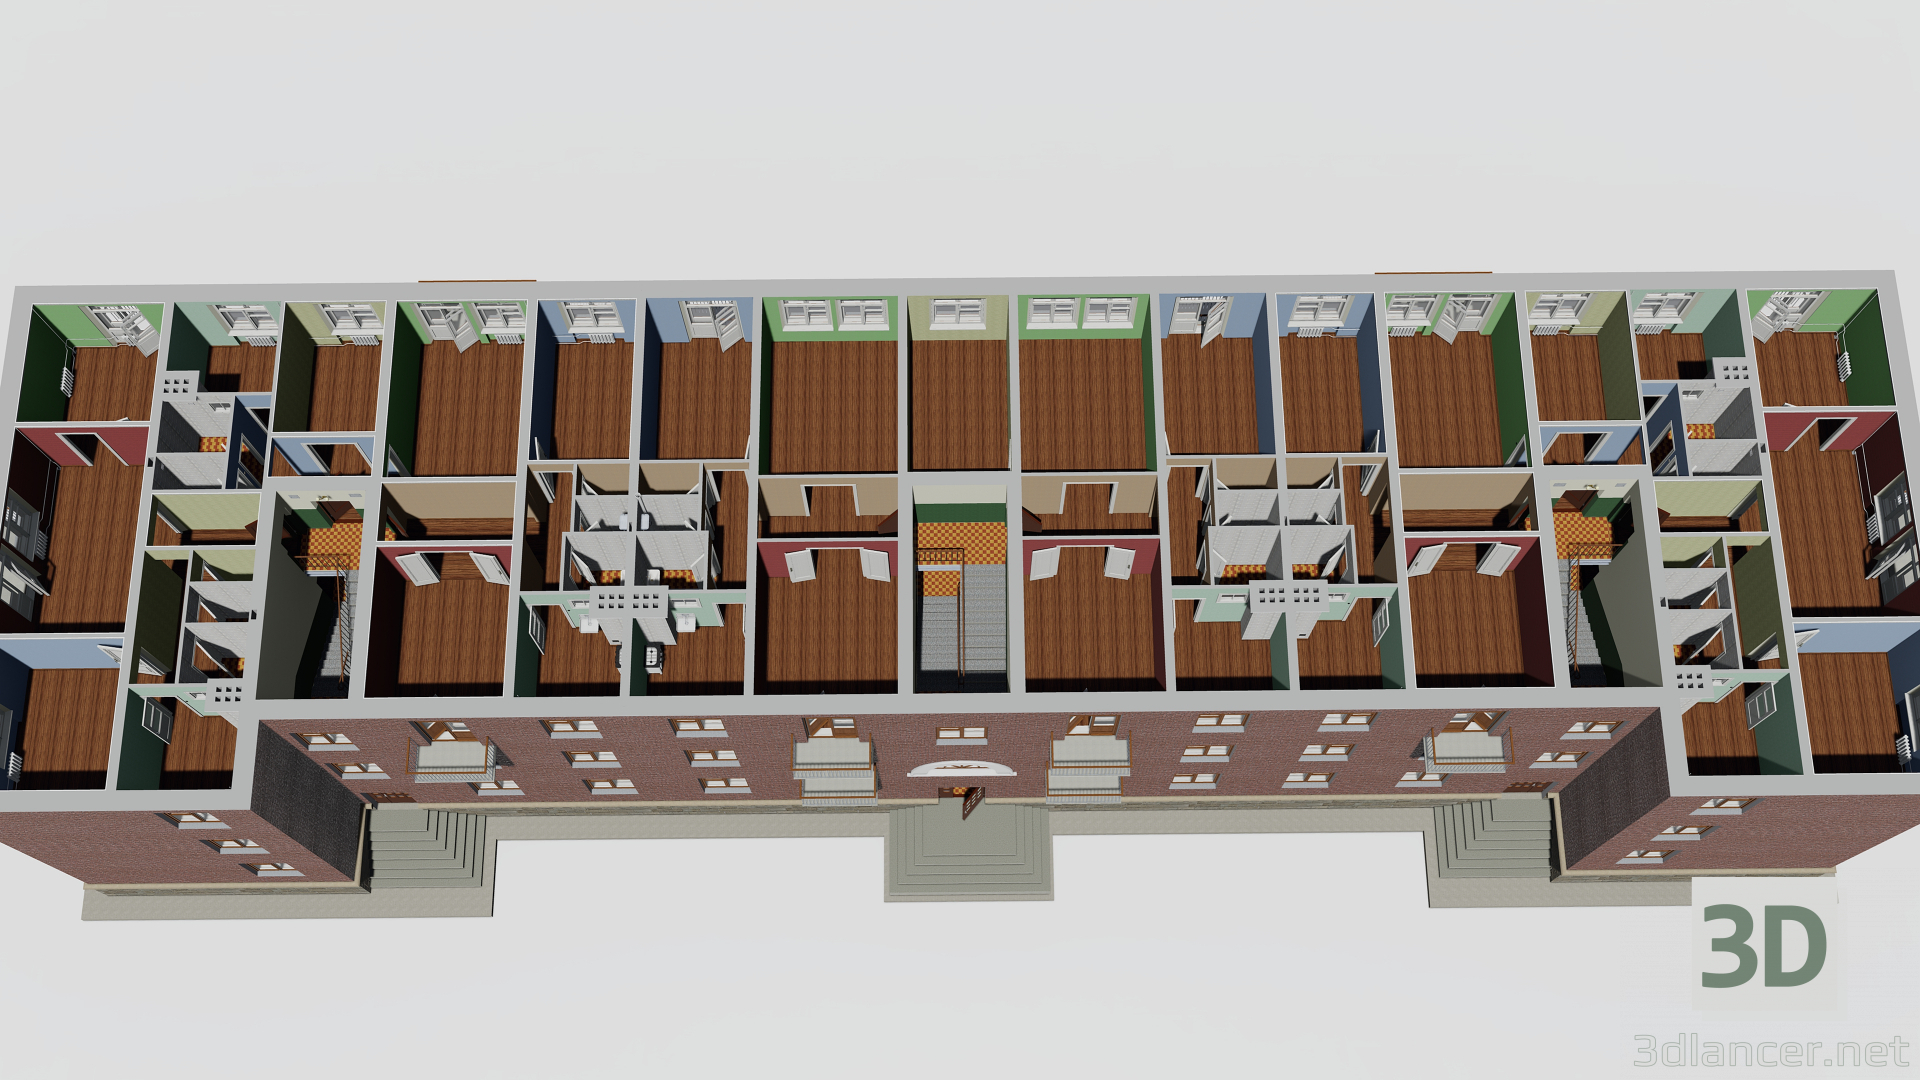 3D Üç katlı bina 1-363-13 modeli satın - render